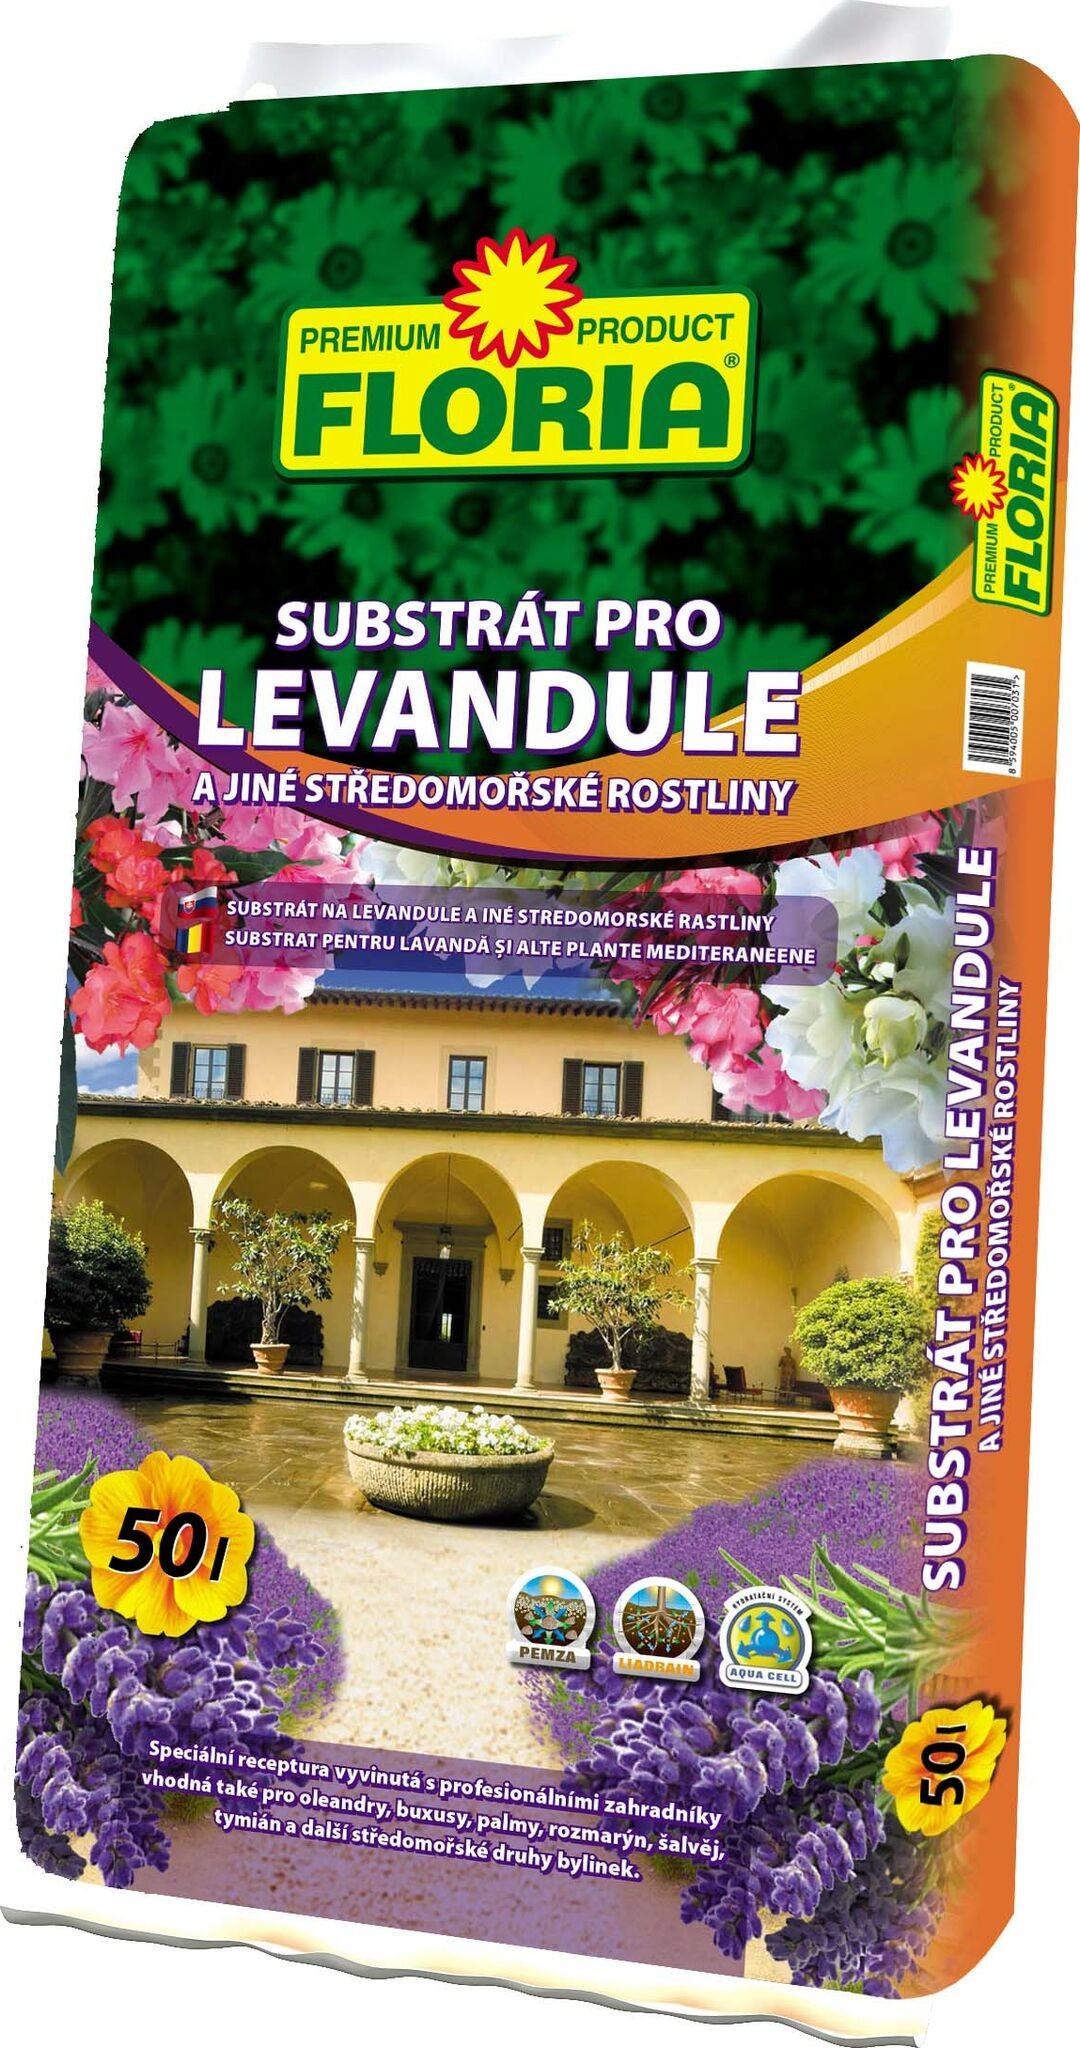 FLORIA Substrát pro levandule a středomořské rostliny (palmy, buksusy) 50 L 00820A